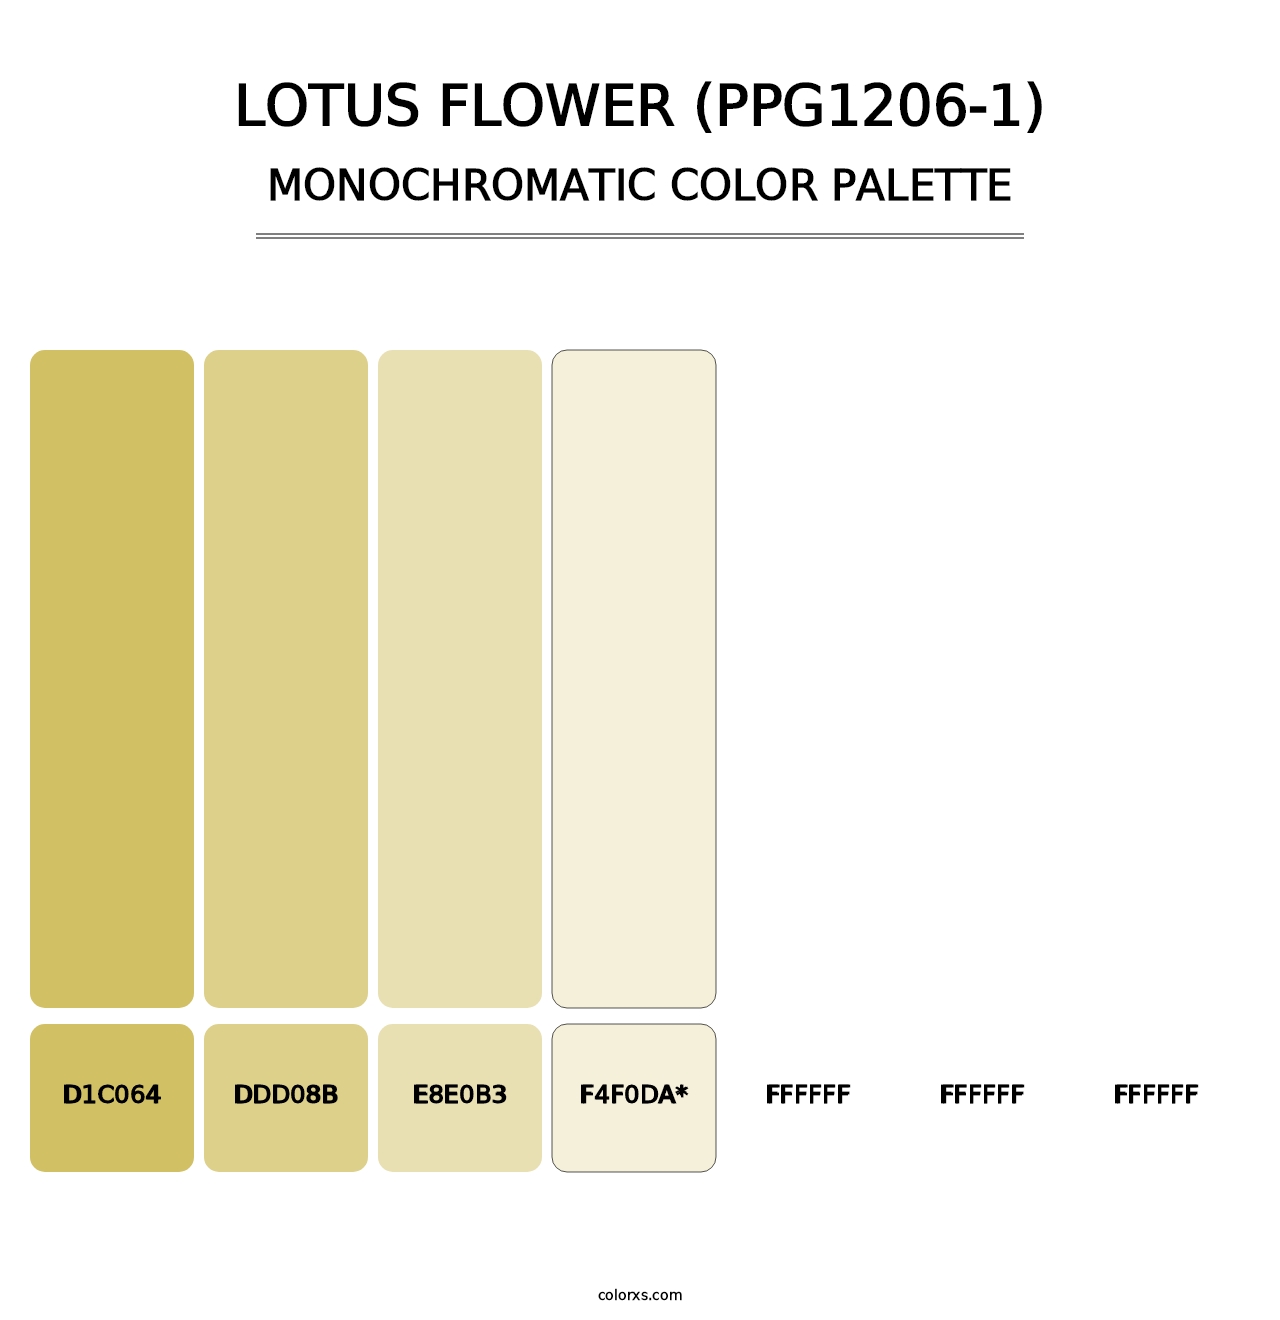 Lotus Flower (PPG1206-1) - Monochromatic Color Palette